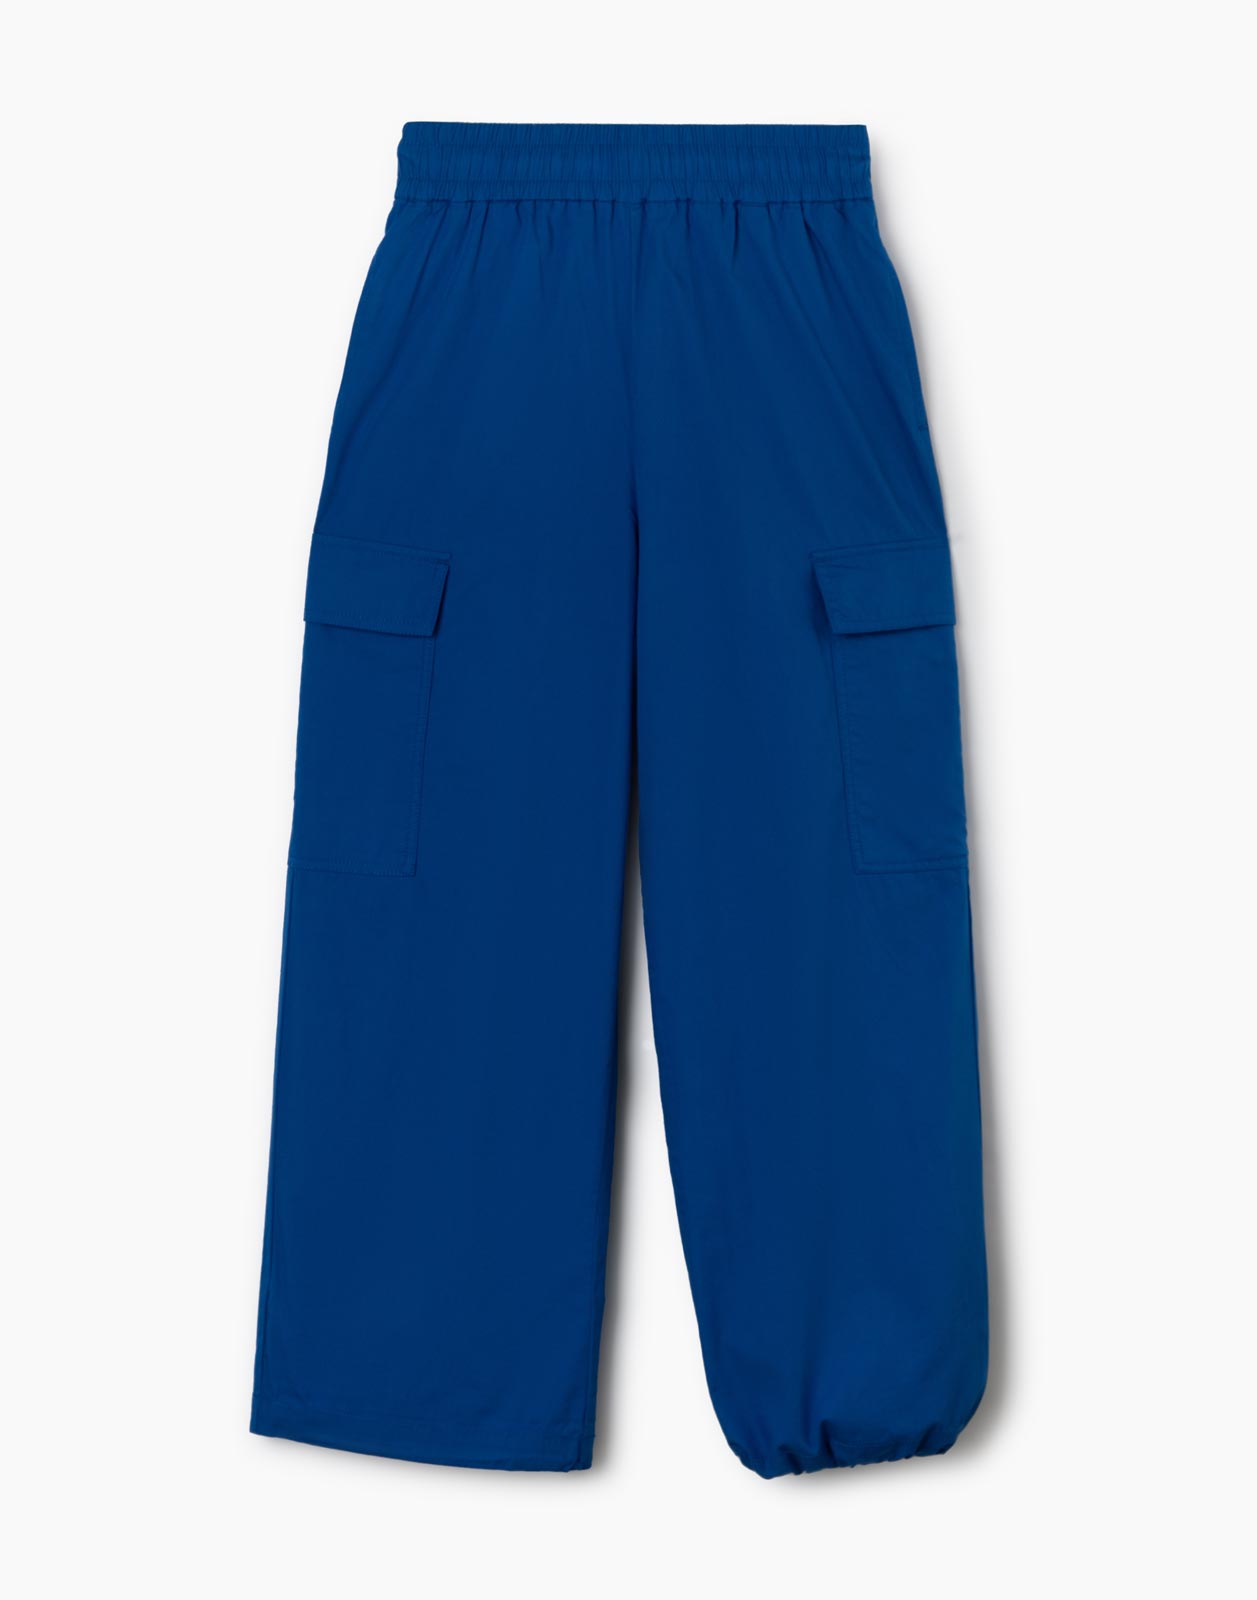 Синие брюки-трансформеры с карманами карго для девочки р.140